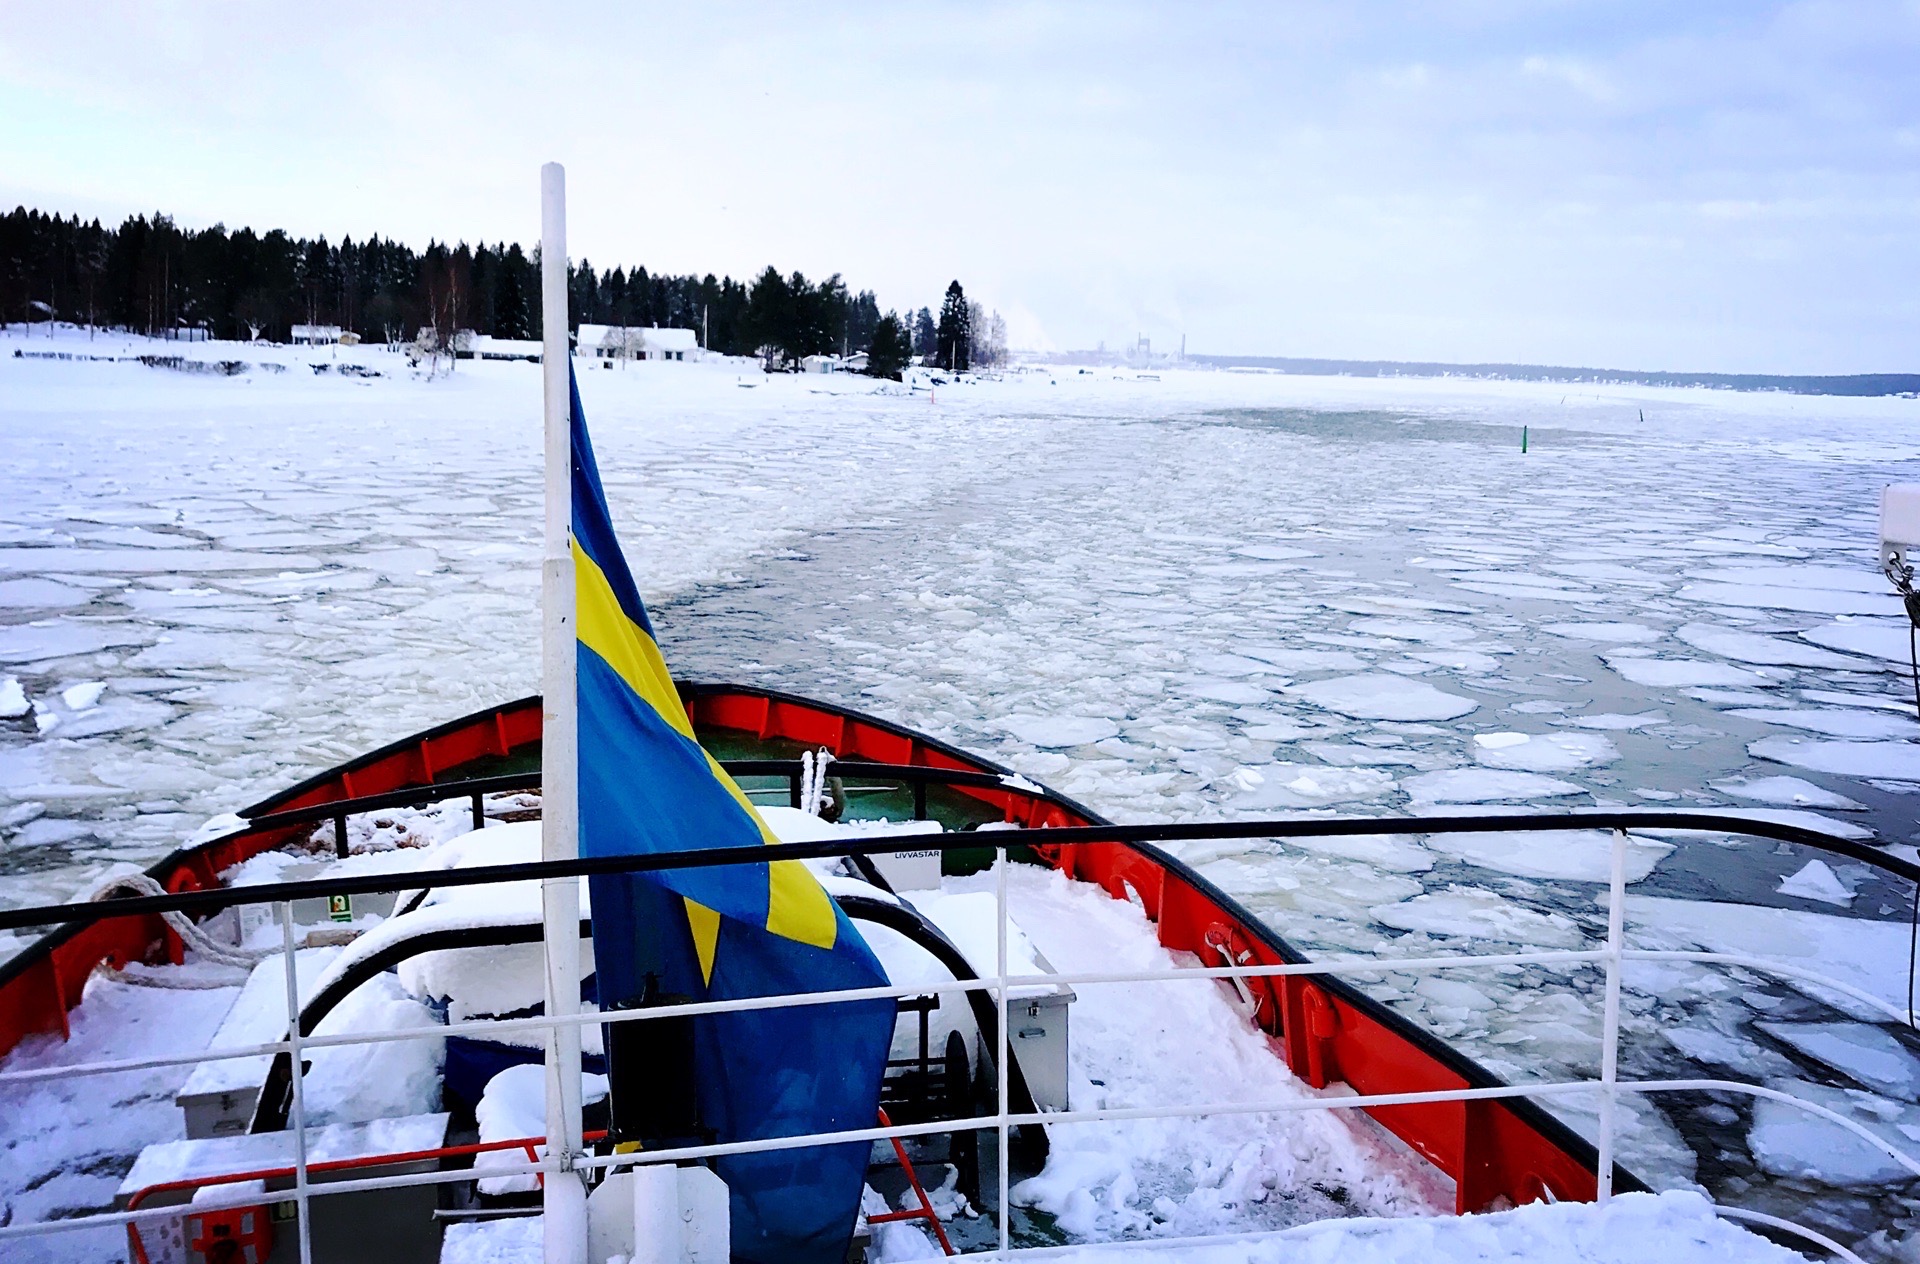 坐个破冰船 到冰冻的波罗的海间当一回“小龙虾”？哈哈哈哈船员用线拉着我们，我们换上了轻盈一体的漂浮衣